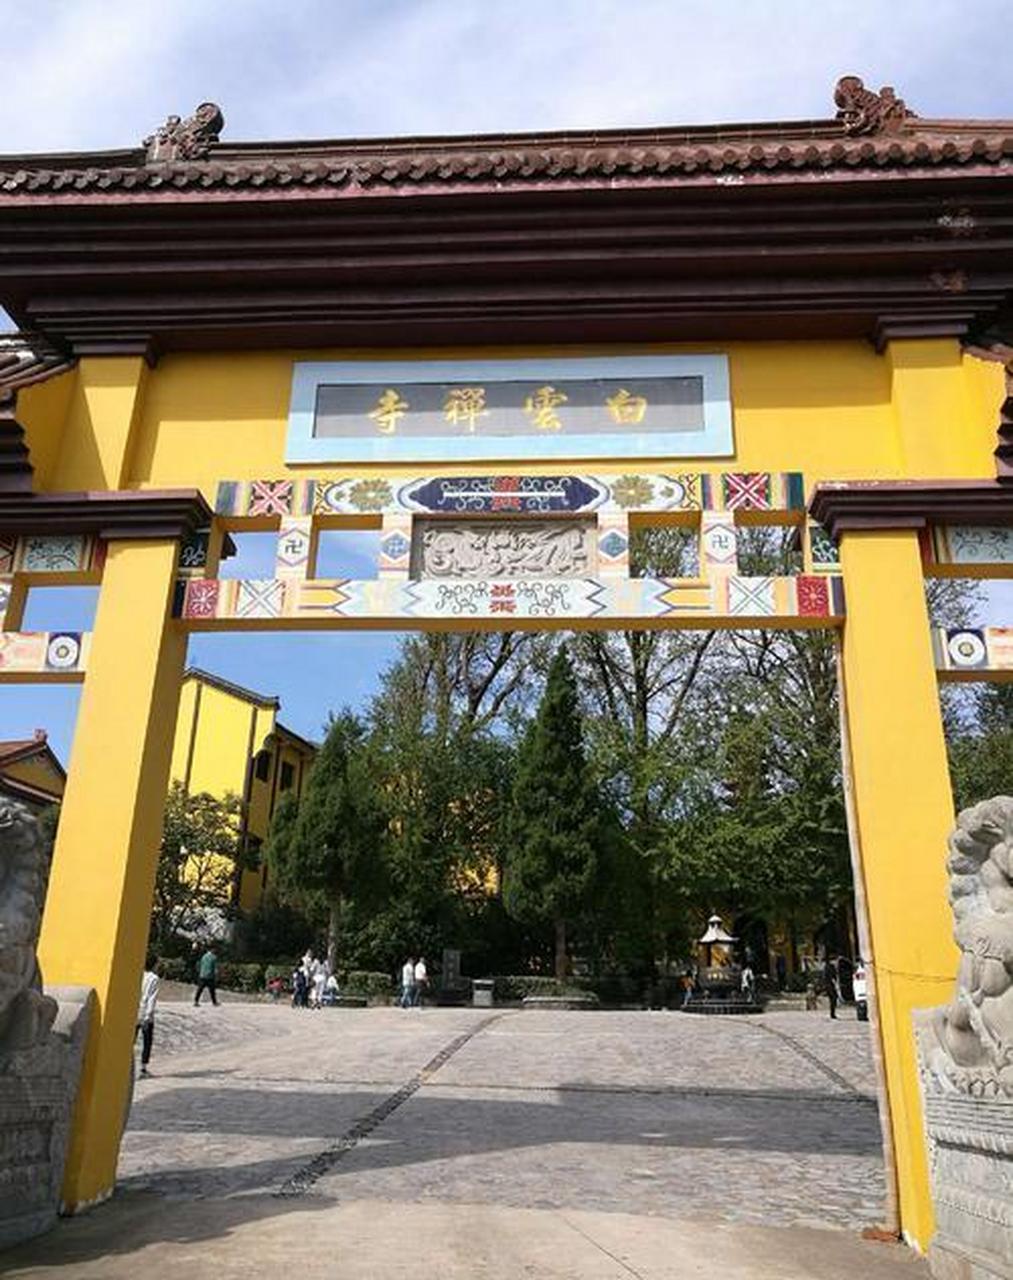 在唐贞观年间时,白云禅寺被正式建成,其景色之奇异,建筑风格之典雅